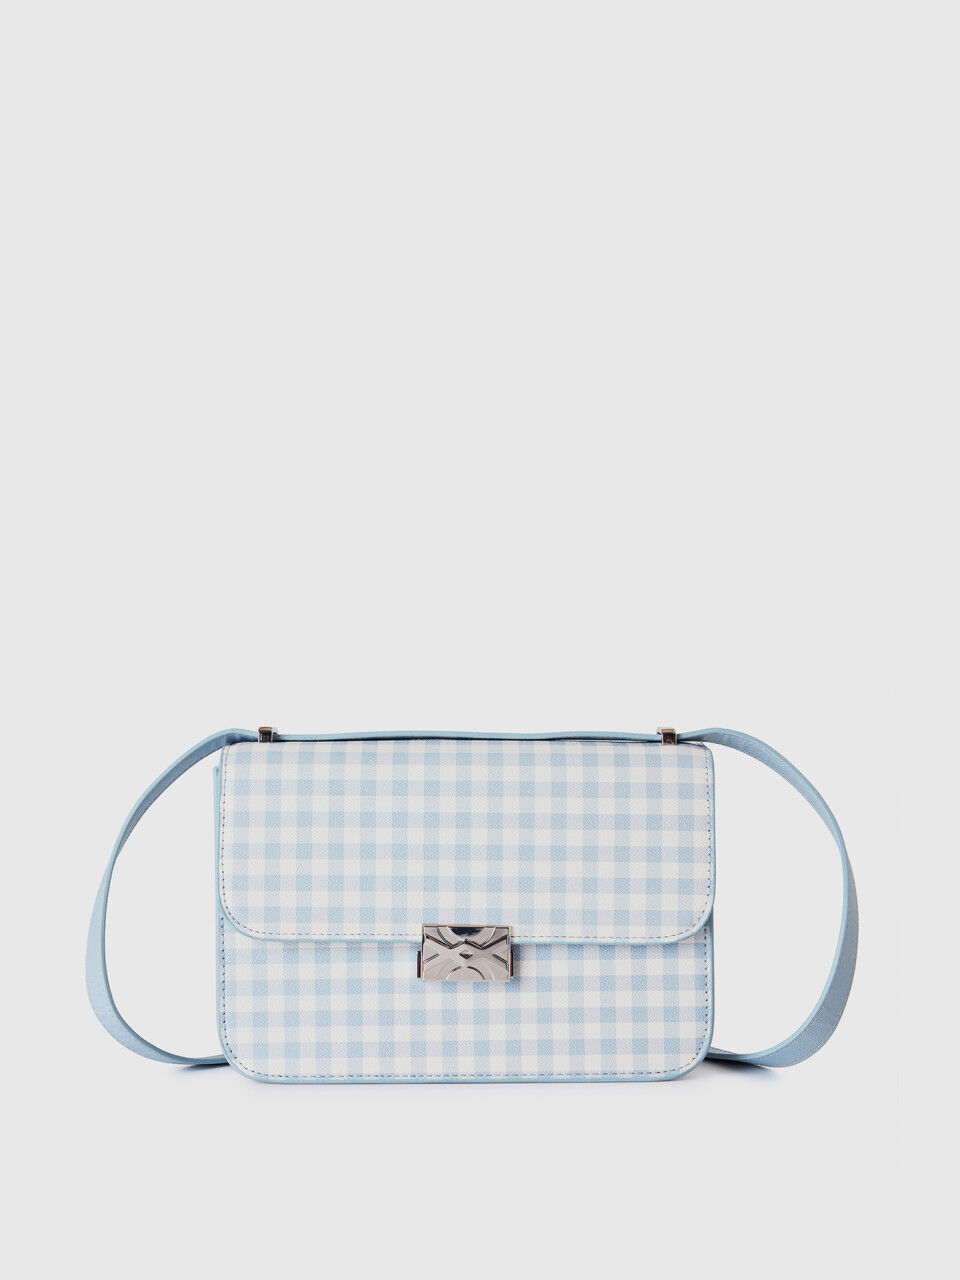 Grand sac Be Bag bleu clair à carreaux Vichy